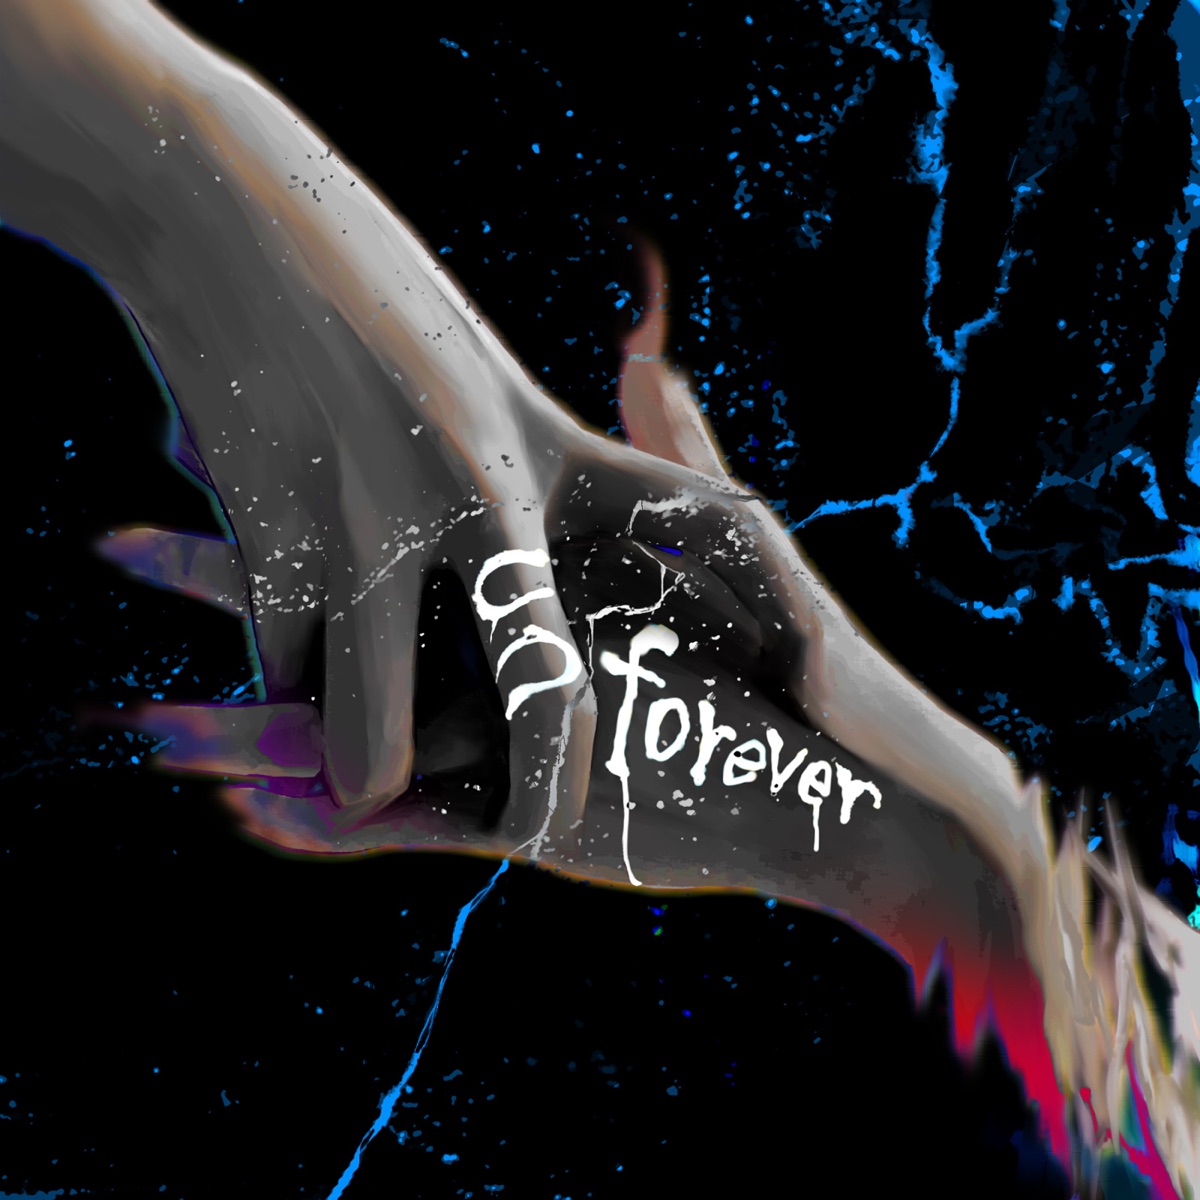 Cover art for『Rib - unforever』from the release『unforever